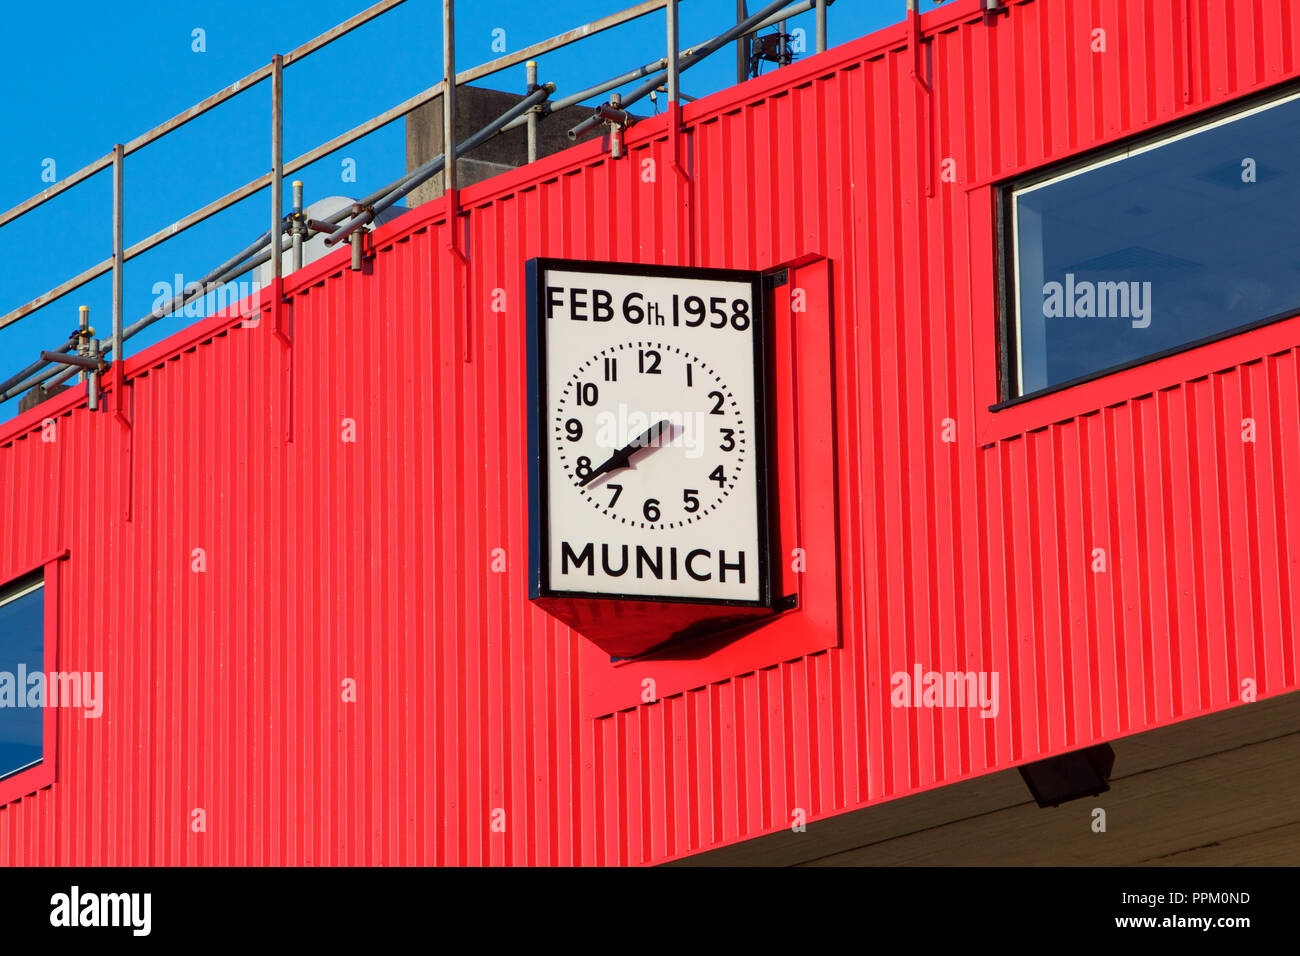 Uhr in Old Trafford, das Zuhause von Manchester United Stadium, zeigt das Datum und die Uhrzeit der München Air Crash Stockfoto